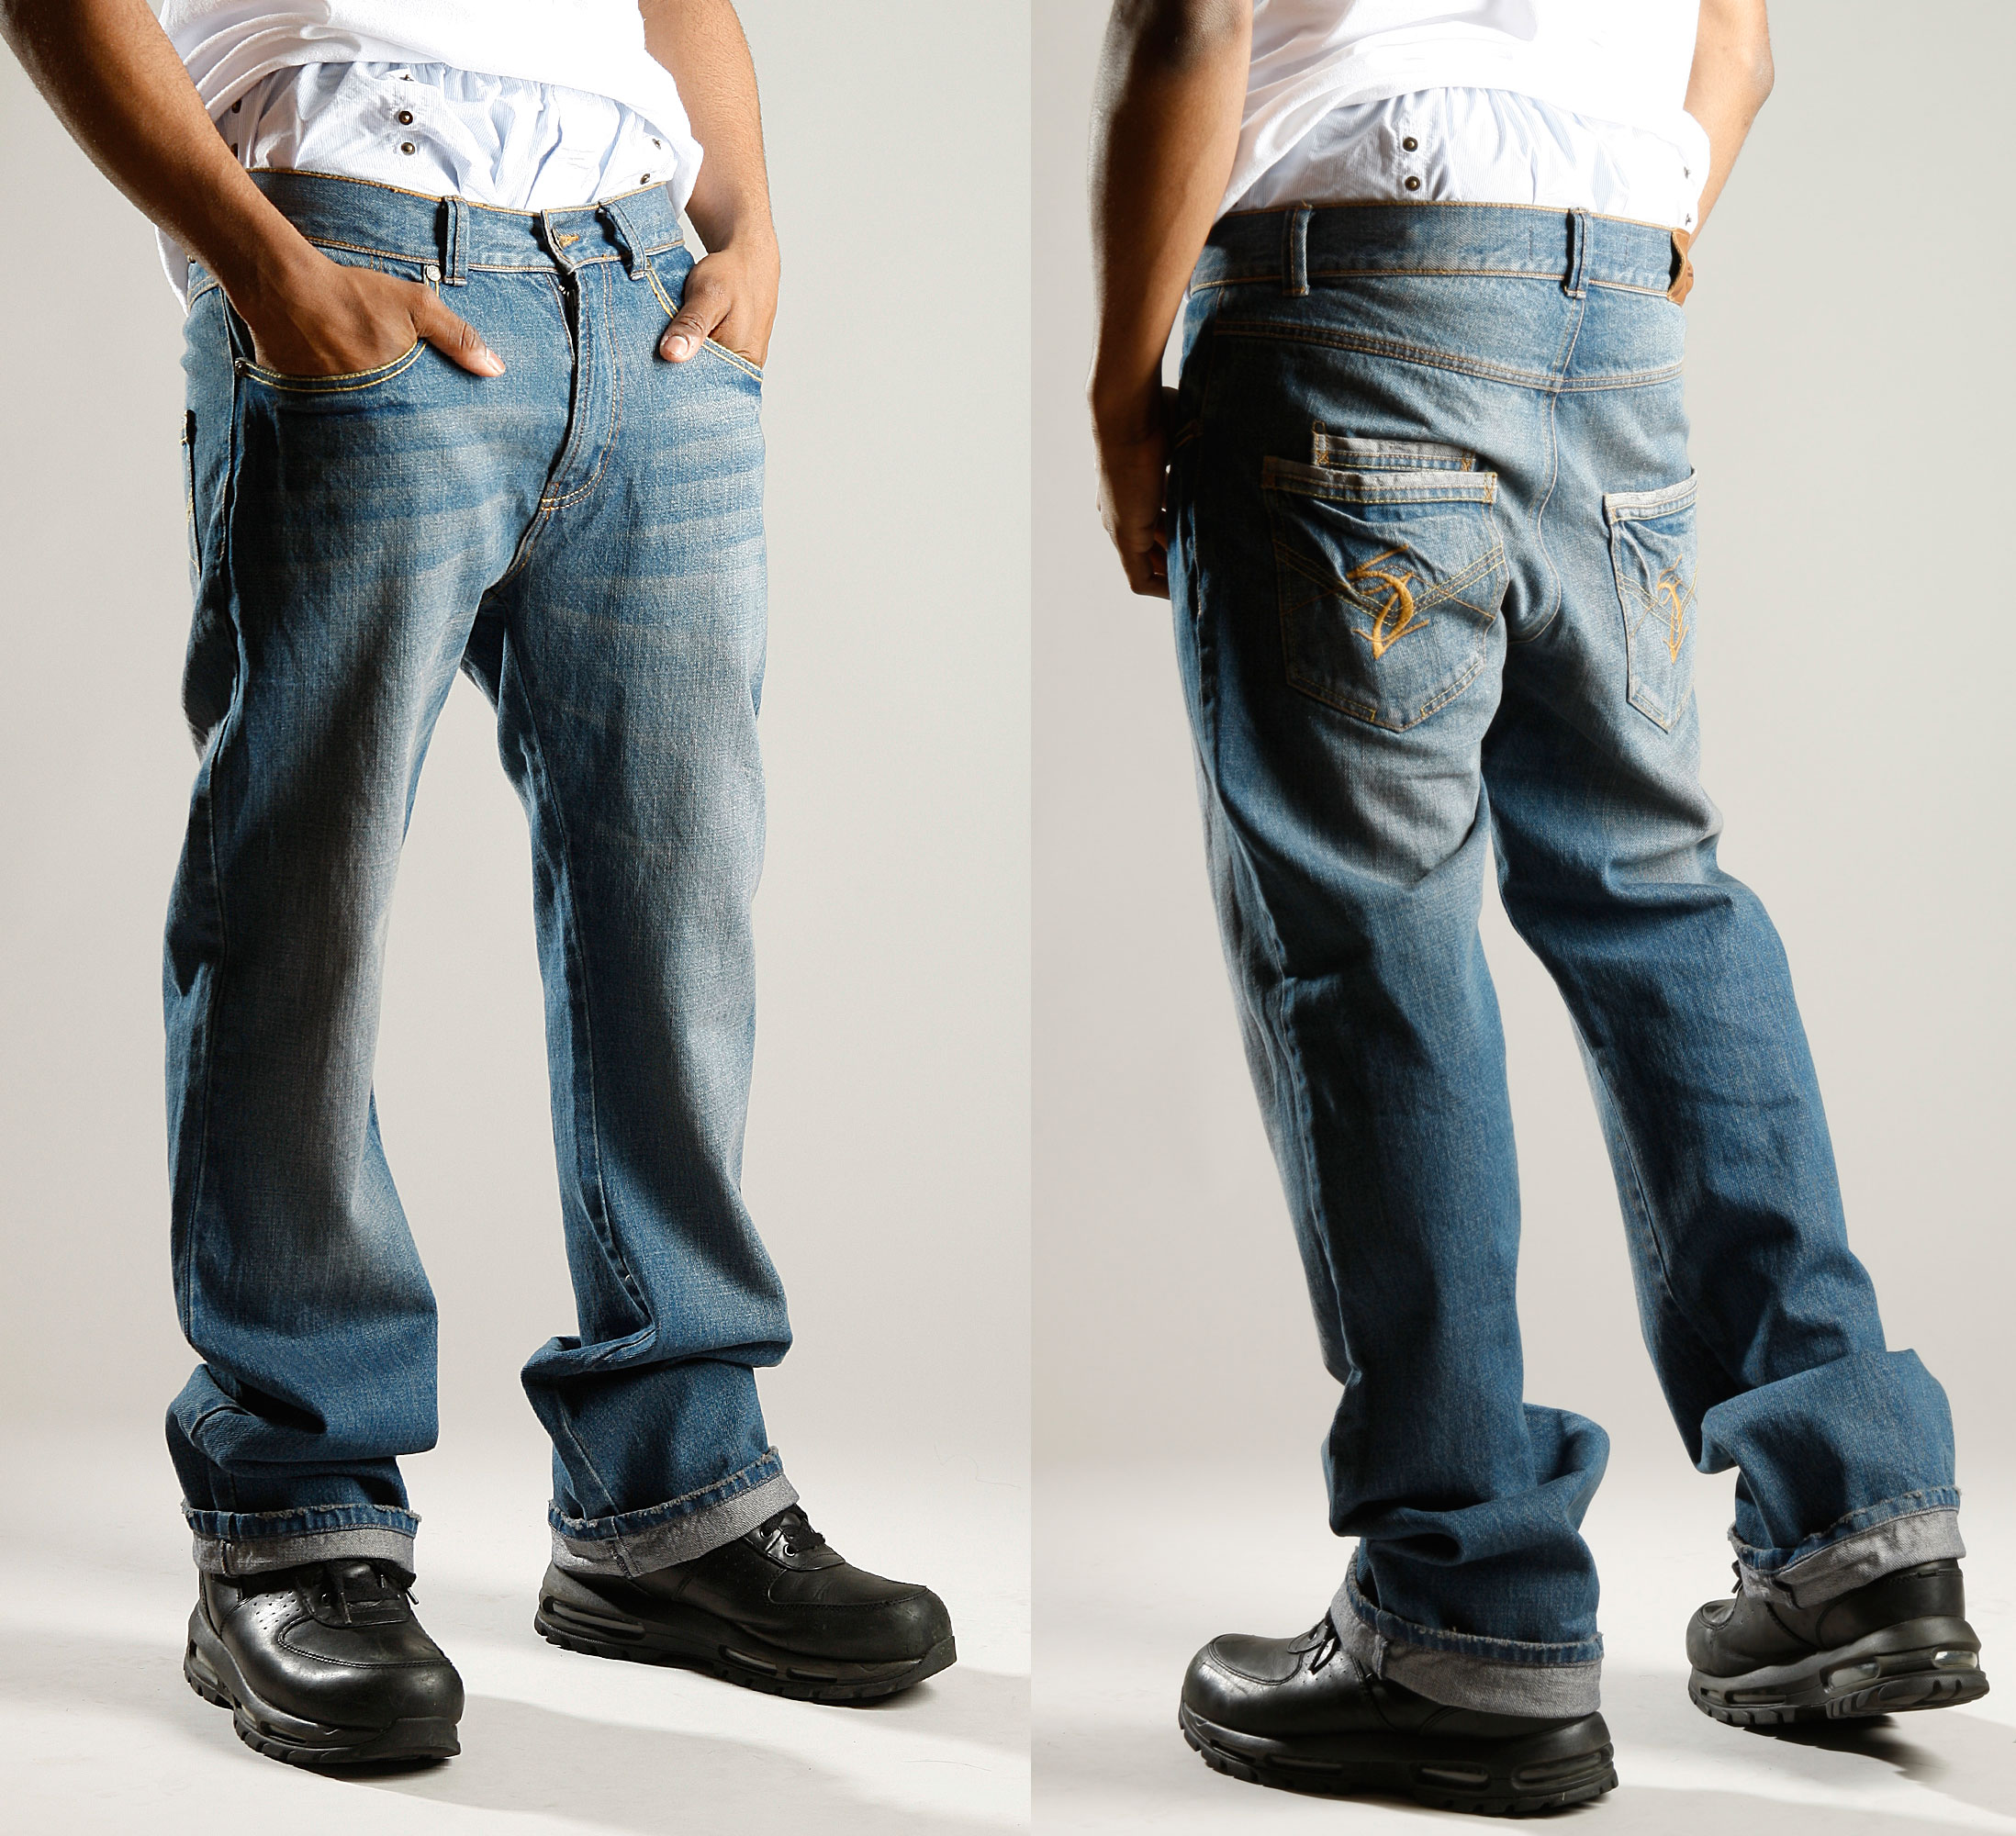 Sagz Jeans, a Built-in Boxer Men Saggin' Jeans Line, Officially